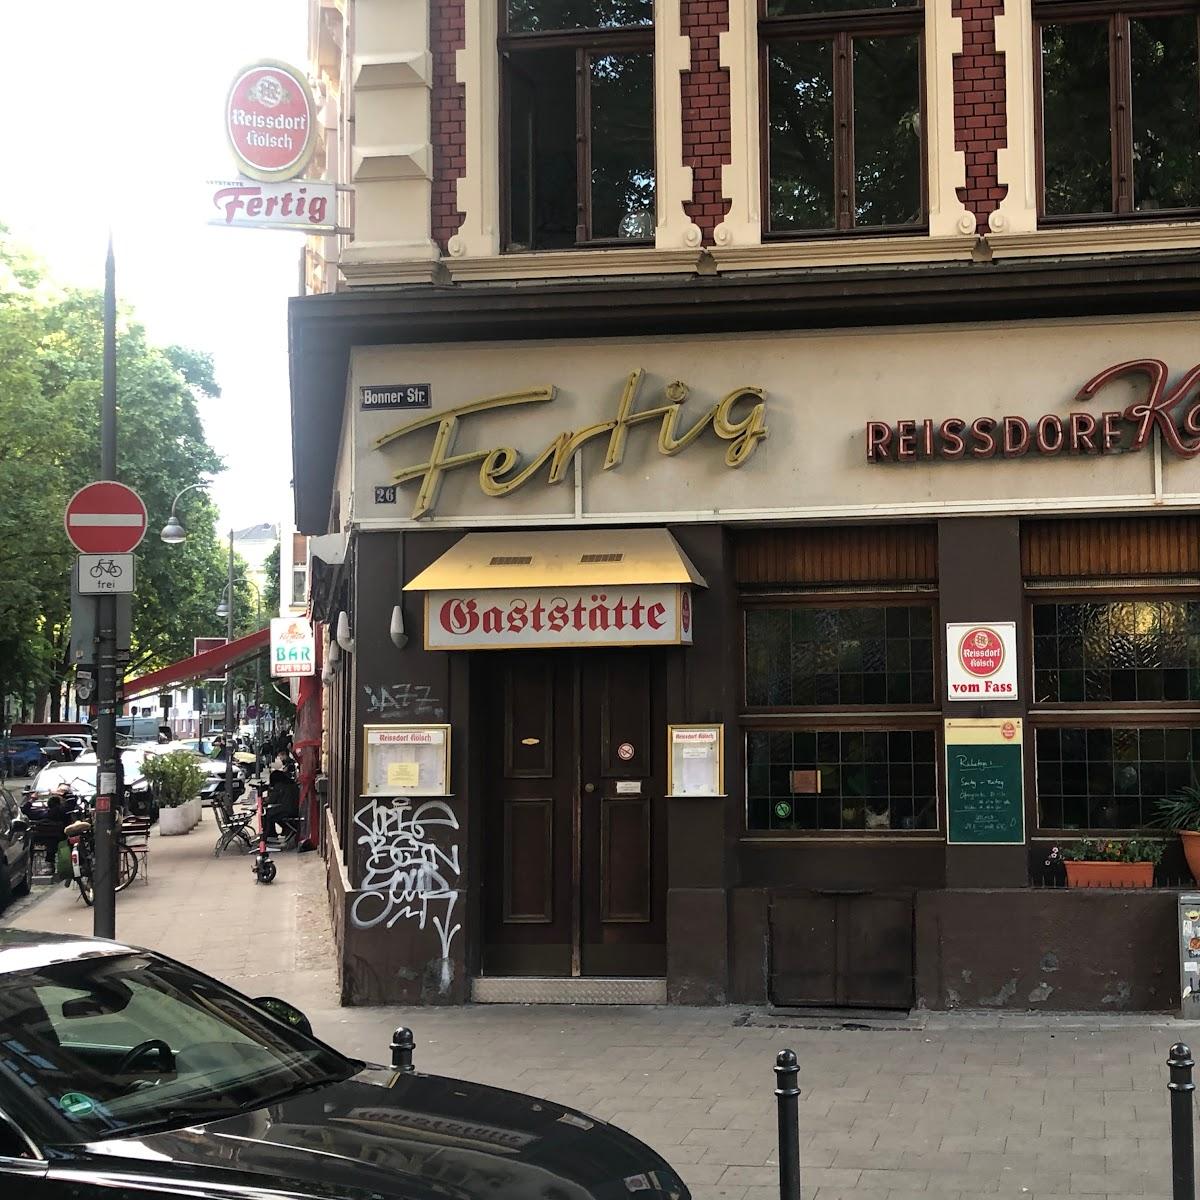 Restaurant "Fertig" in Köln